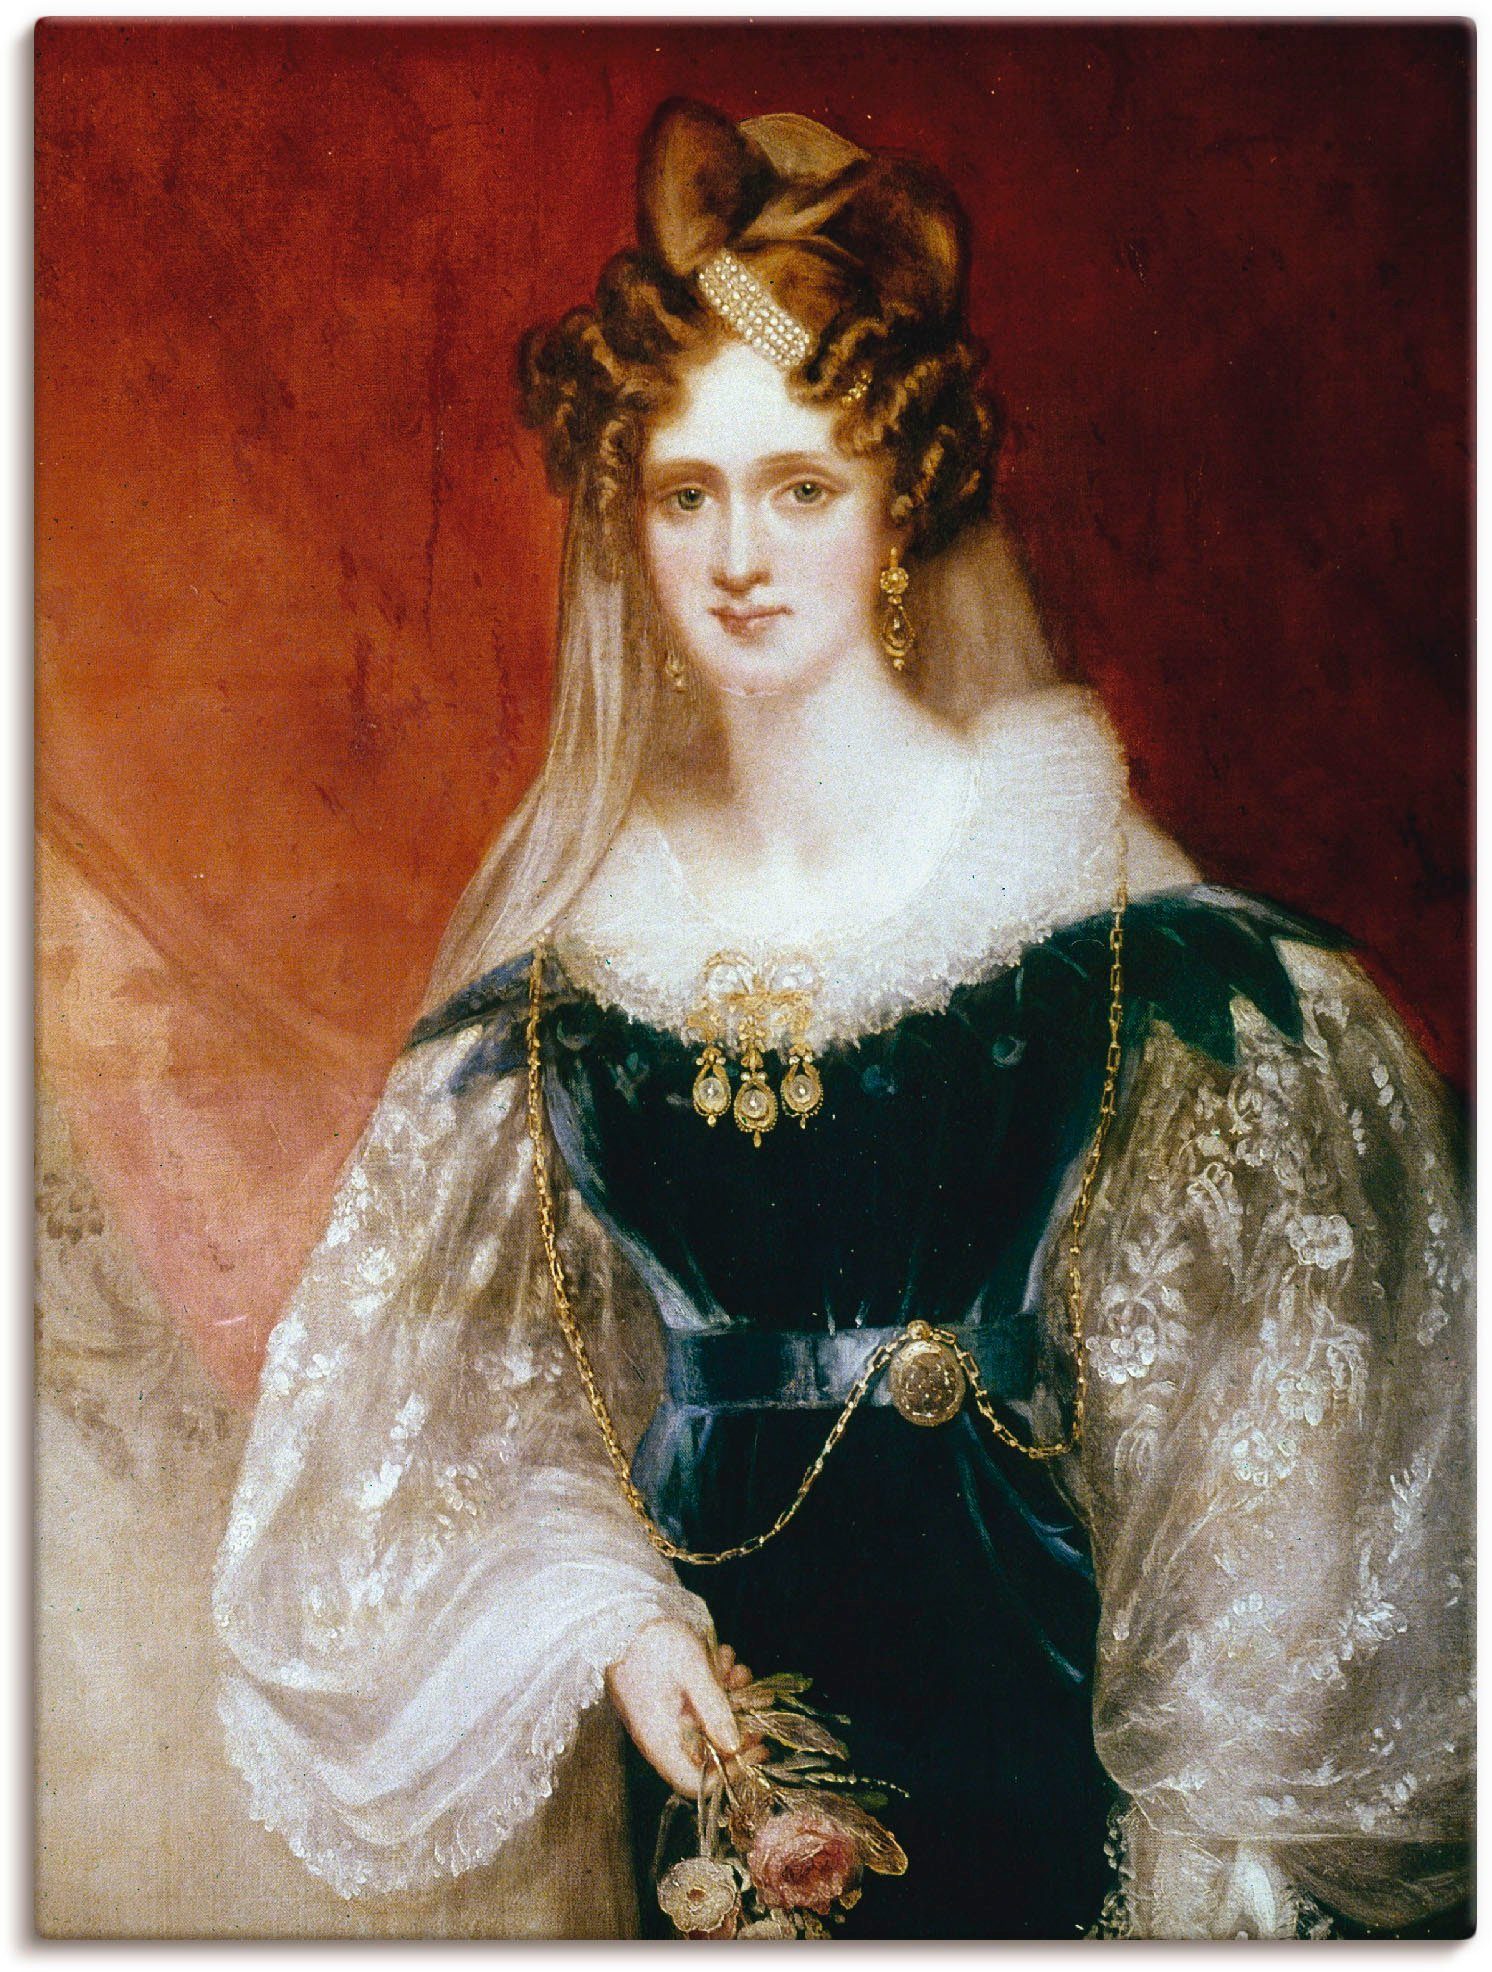 Artland Artprint Koningin Adelaide van Engeland, 1831 in vele afmetingen & productsoorten - artprint van aluminium / artprint voor buiten, artprint op linnen, poster, muursticker /